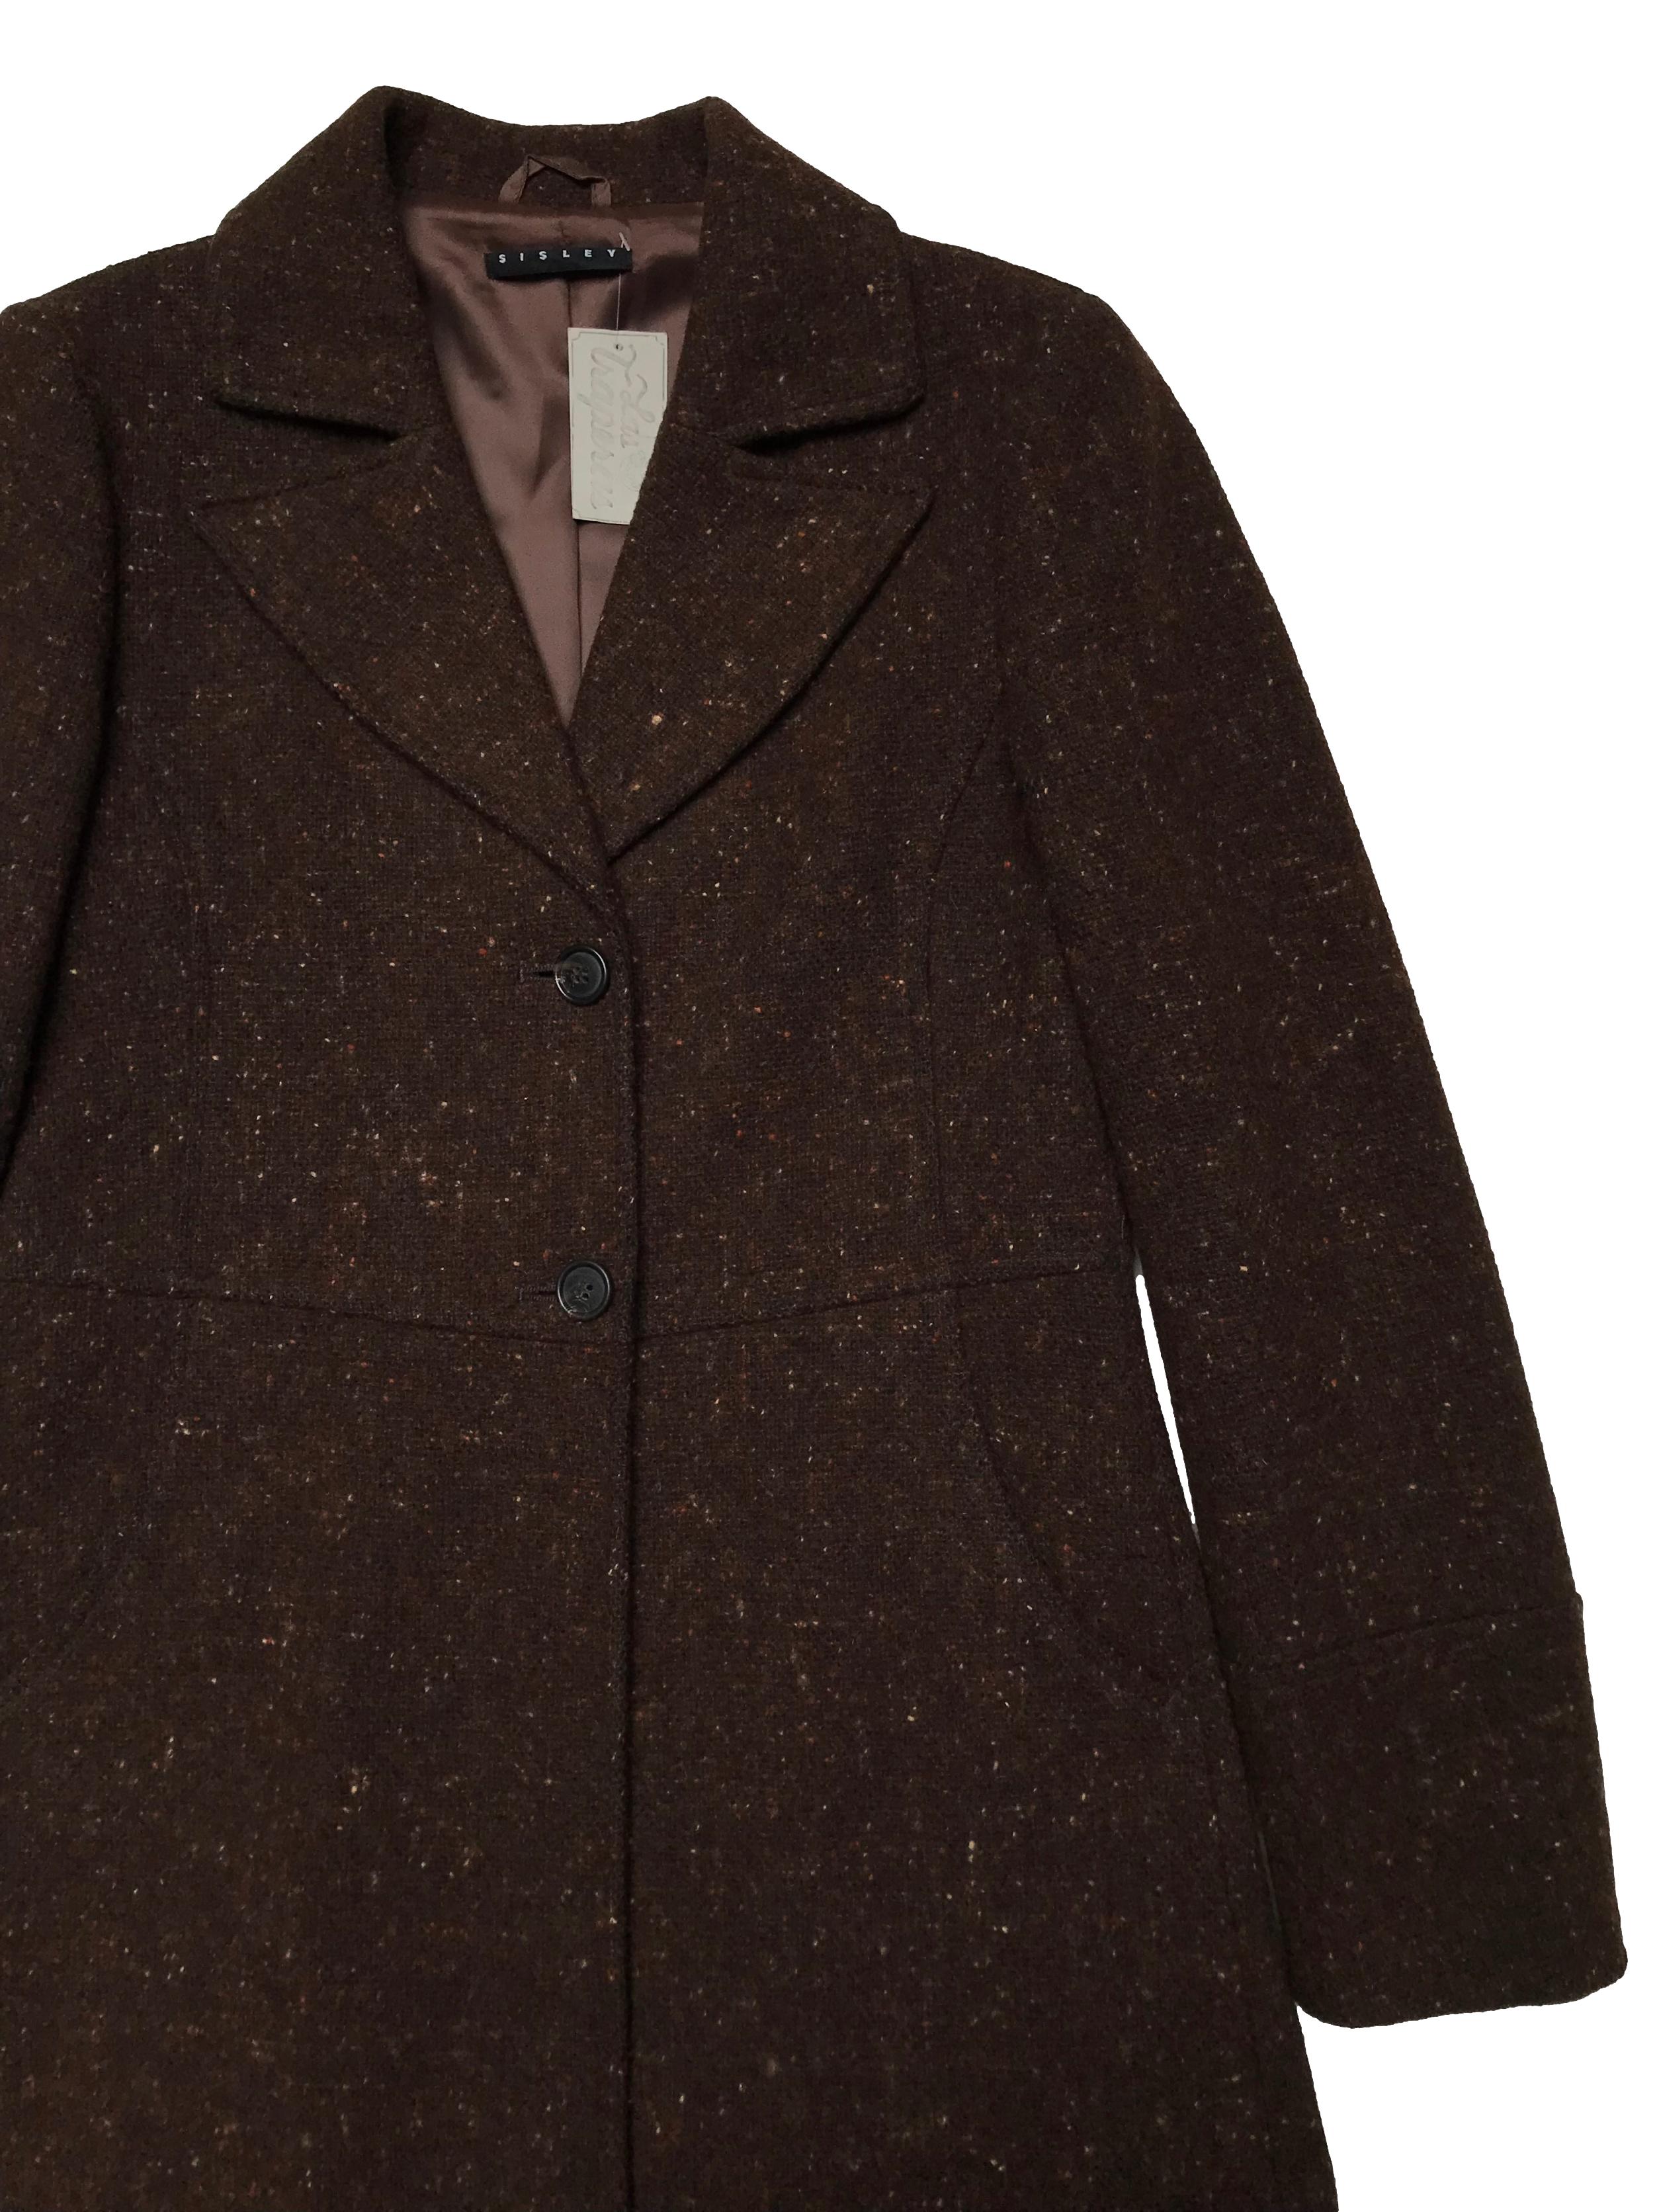 Abrigo Sisley marrón jaspeado, tela tipo lana compacta, forrado, tiene solapas, botones y bolsillos delanteros. Ancho 92cm Largo 95cm. Precio original S/ 700